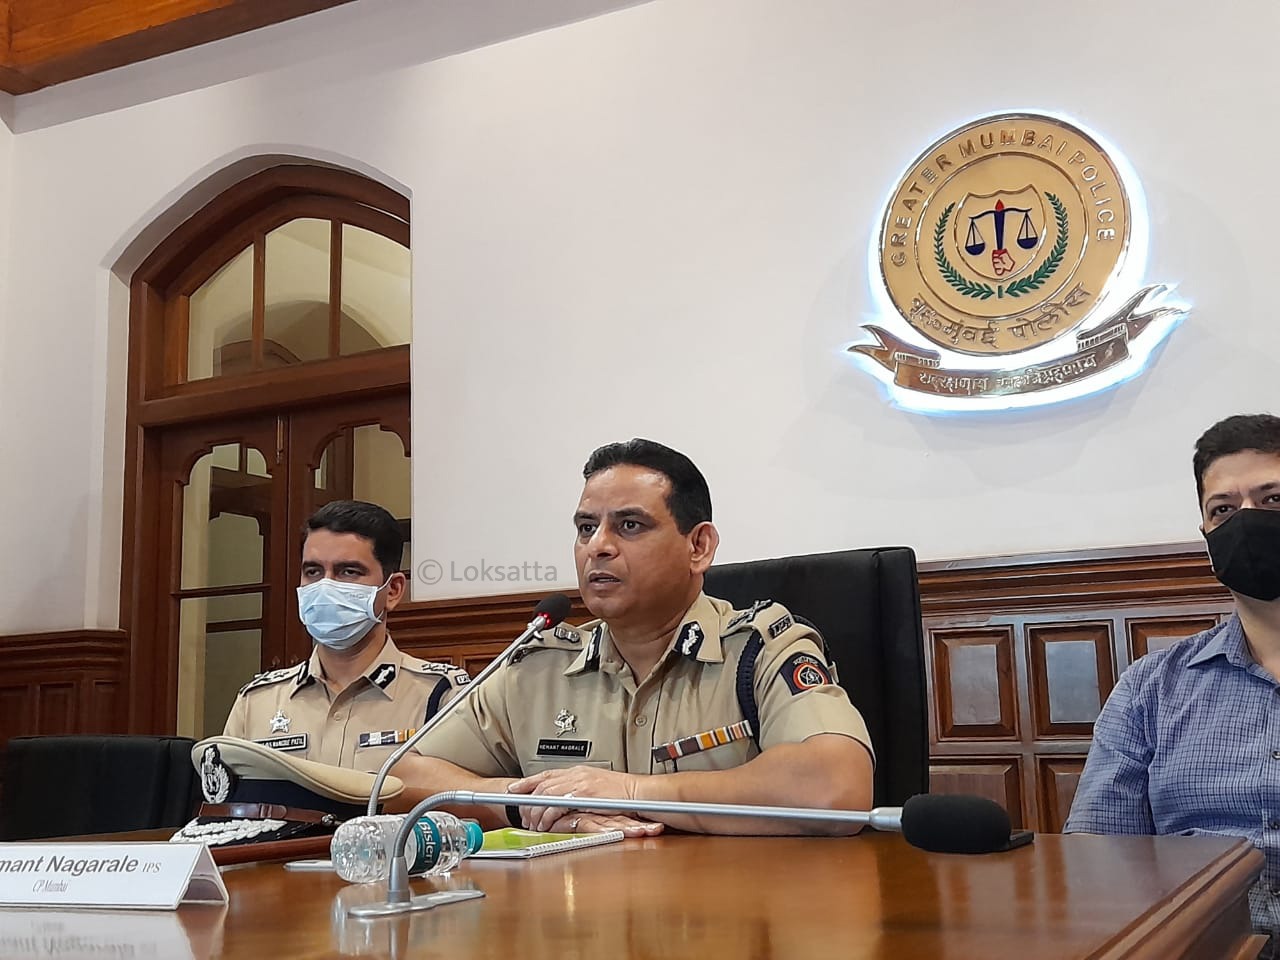 पोलीस महासंचालक ते मुंबई पोलीस आयुक्त असा नगराळे यांचा उलटा प्रवास झाला आहे. अर्थात मुंबईचे आयुक्तपद हे महासंचालक दर्जाचे असले तरी पोलीस महासंचालक हा राज्य पोलीस दलाचा प्रमुख असतो.